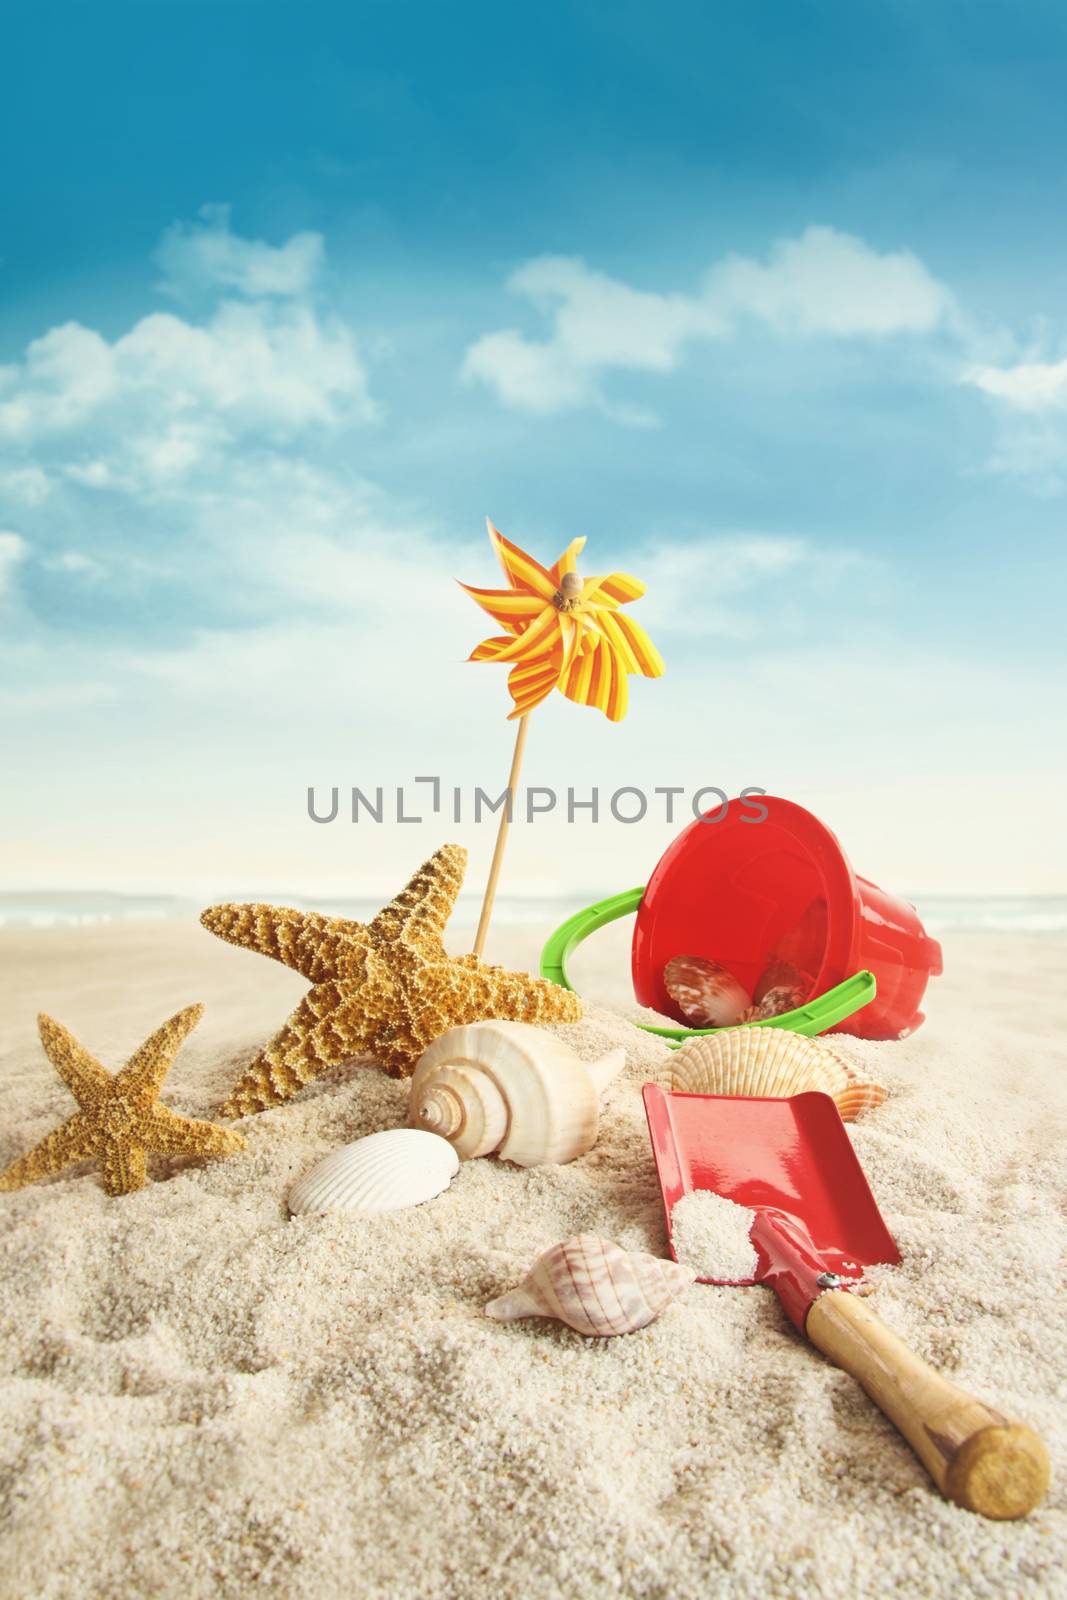 Beach toys on beach against blue sky  by Sandralise